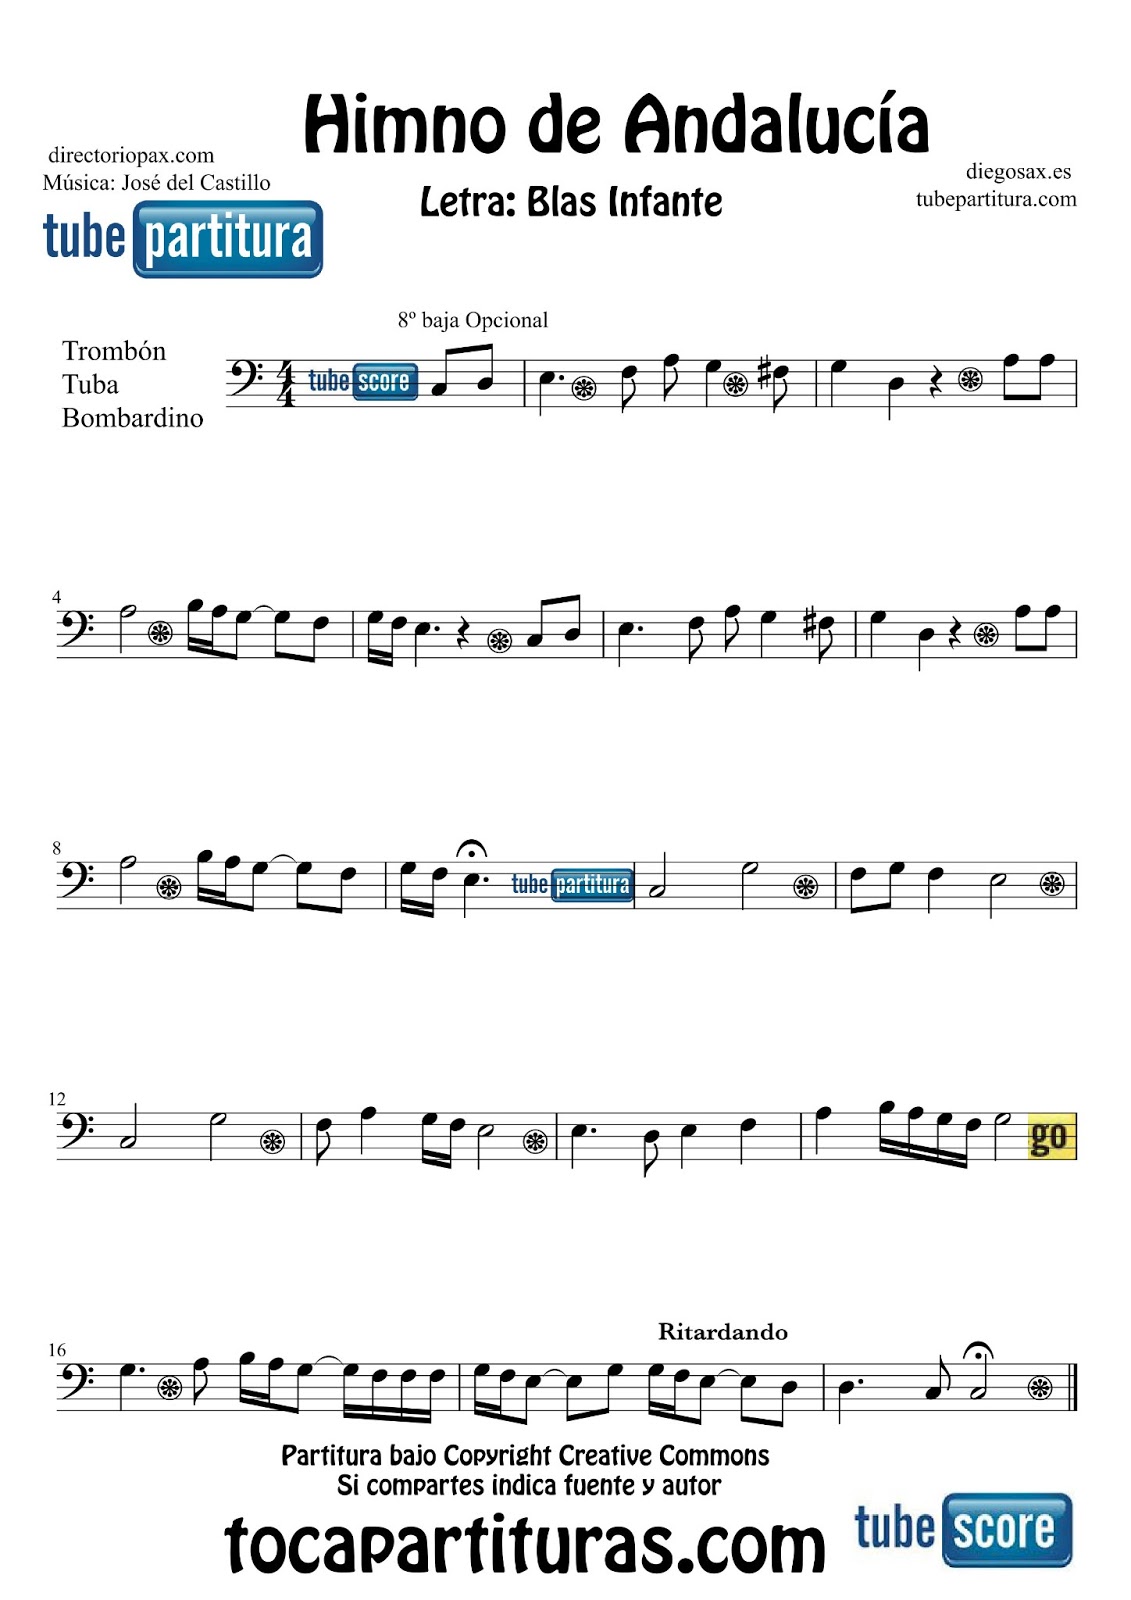 diegosax: El Himno de Andalucía Partitura para Violín, Saxofón Alto, Trompeta, Viola, Oboe, Clarinete, Saxo Tenor, Soprano, Trombón, Fliscorno, Violonchelo, Fagot, Barítono, Tuba Elicón y Corno Inglés. Música de José del